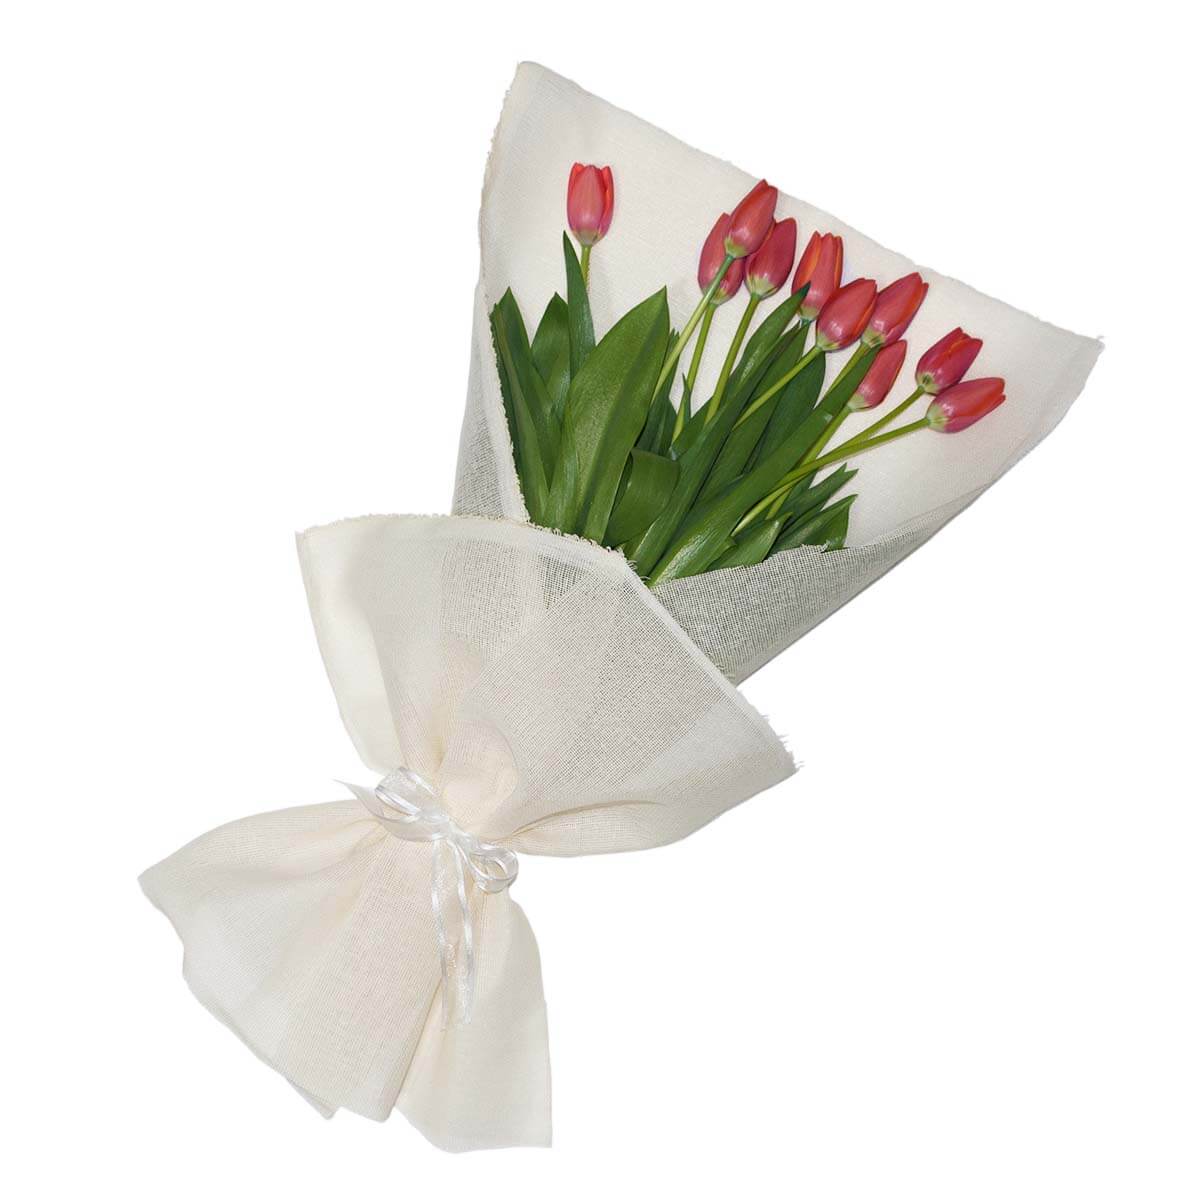 Ramo de tulipanes - Detalles a distancia | Envía flores a domicilio